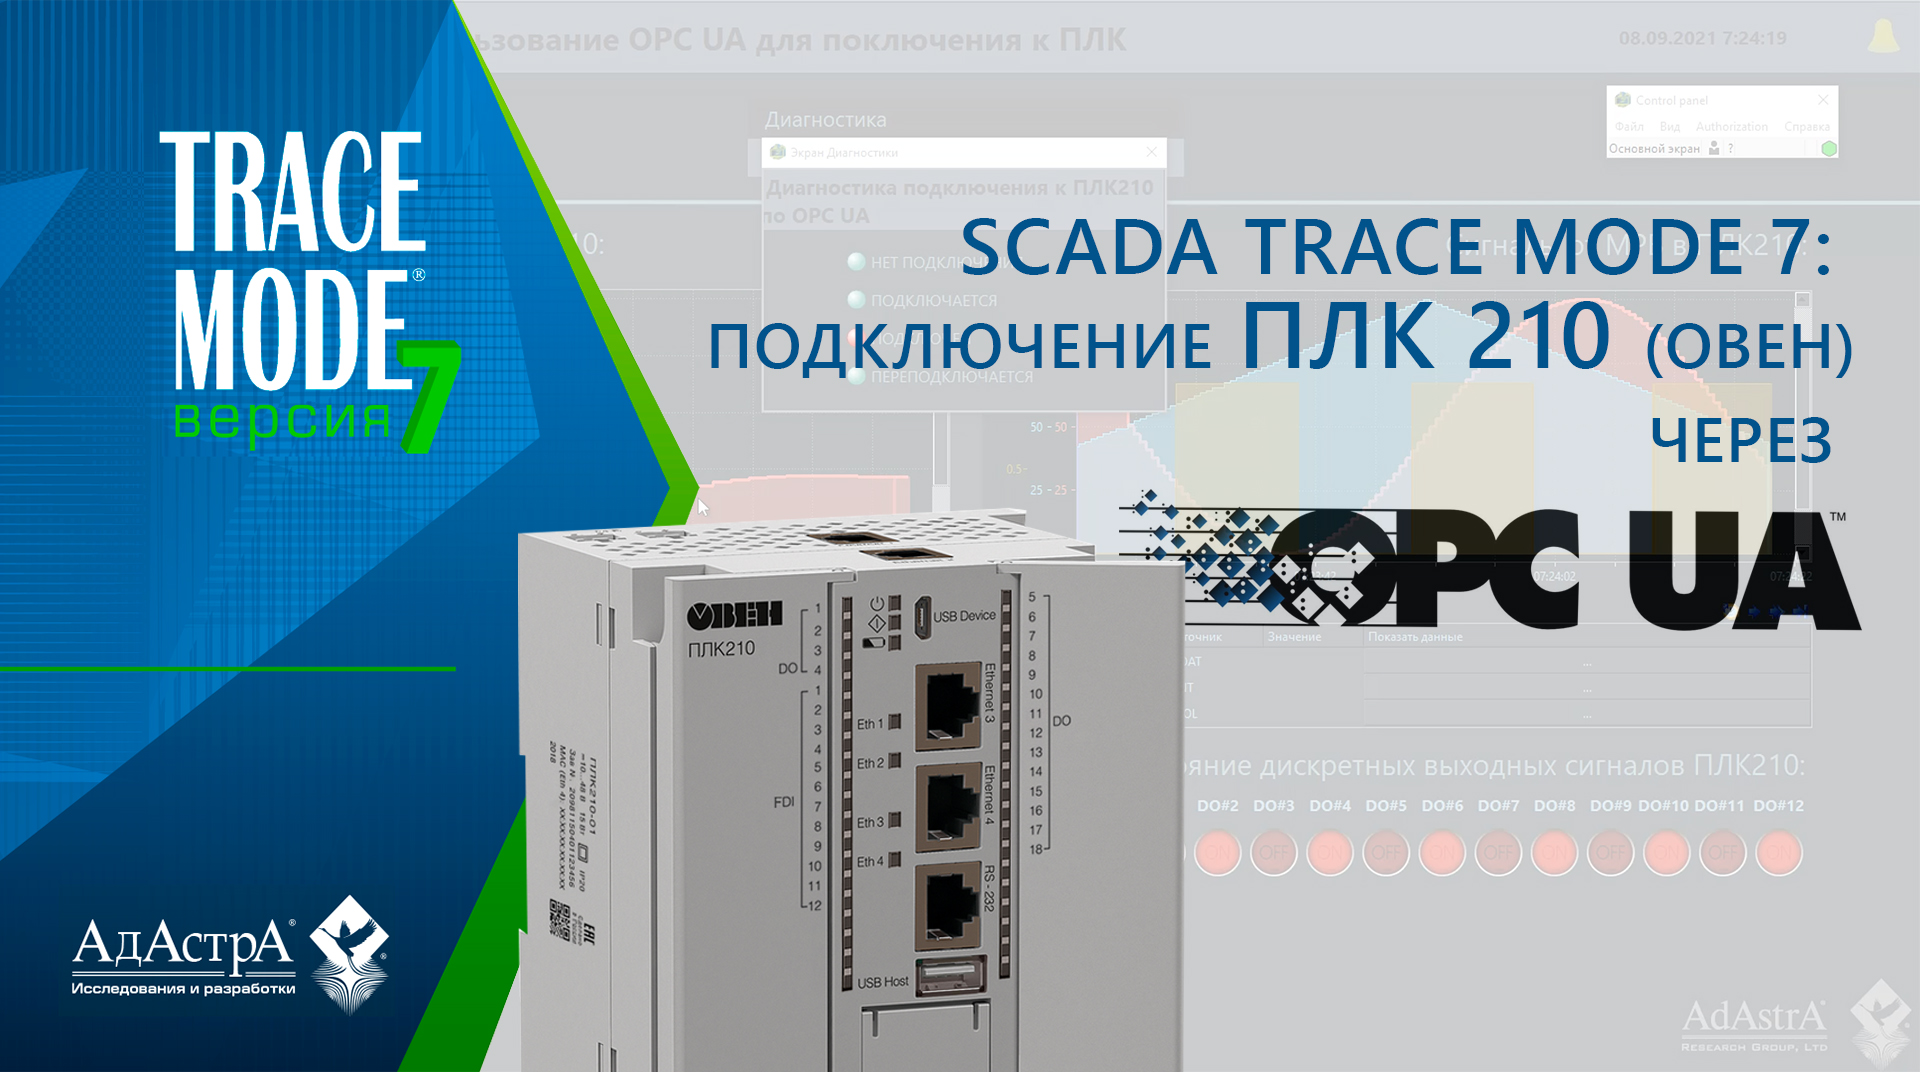 SCADA  TRACE MODE 7: подключение ОВЕН ПЛК 210 через OPC UA